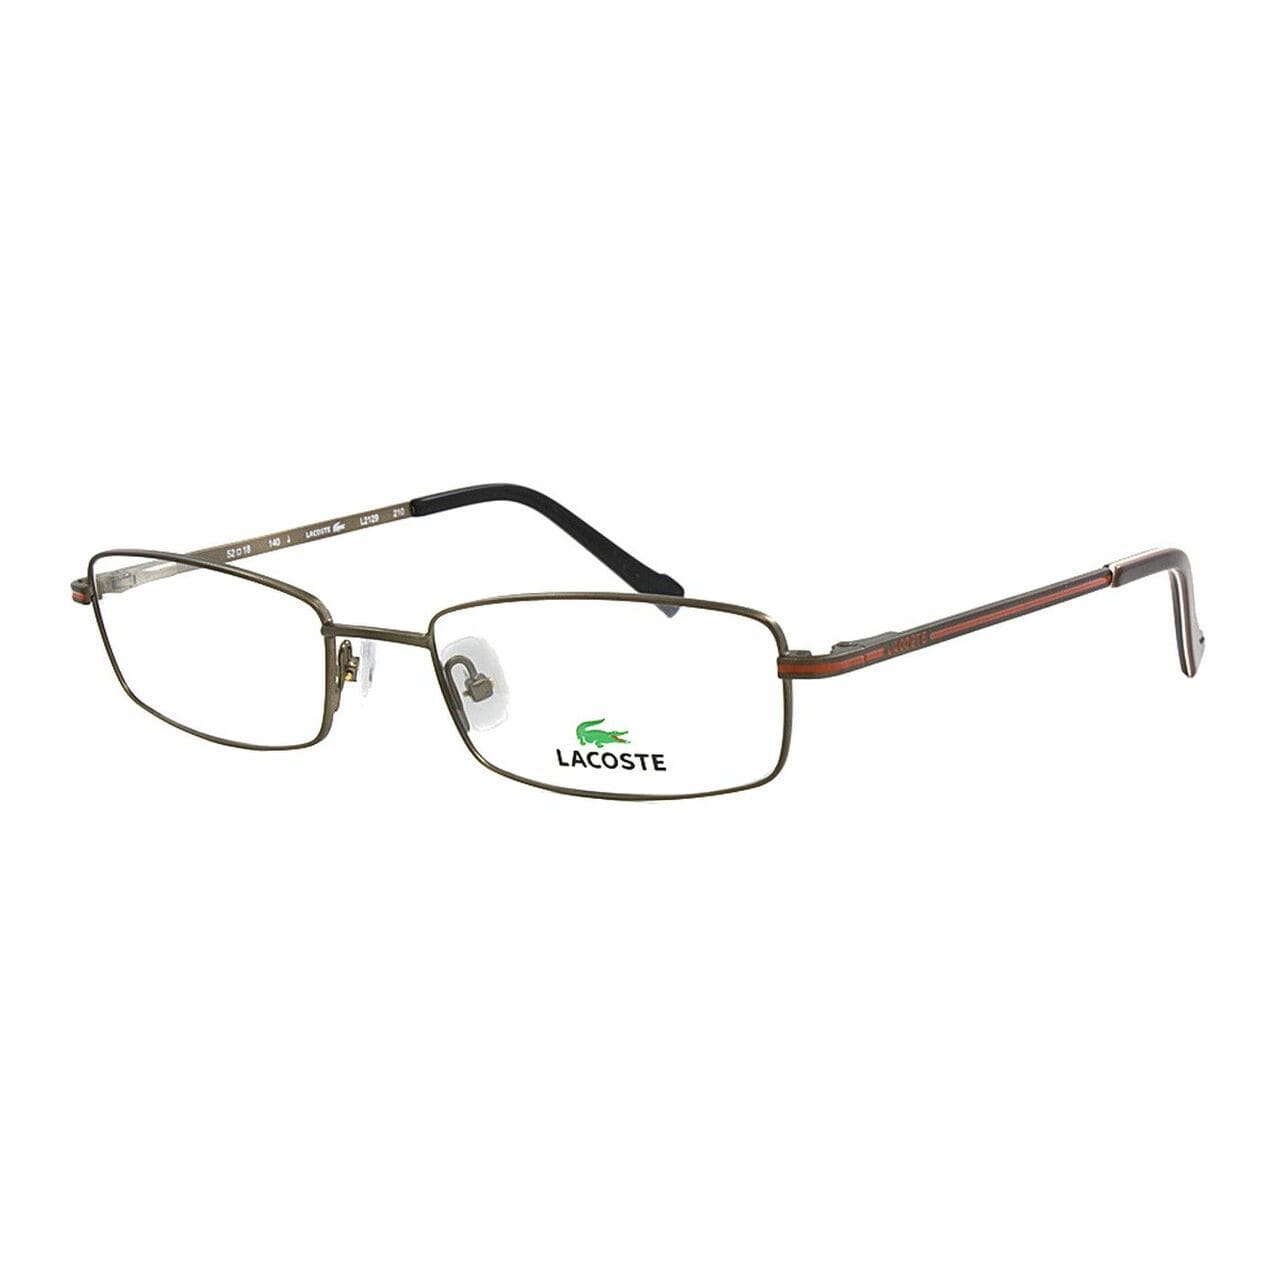 Lacoste L2129-210 Satin Brown Rectangular Unisex Metal Eyeglasses